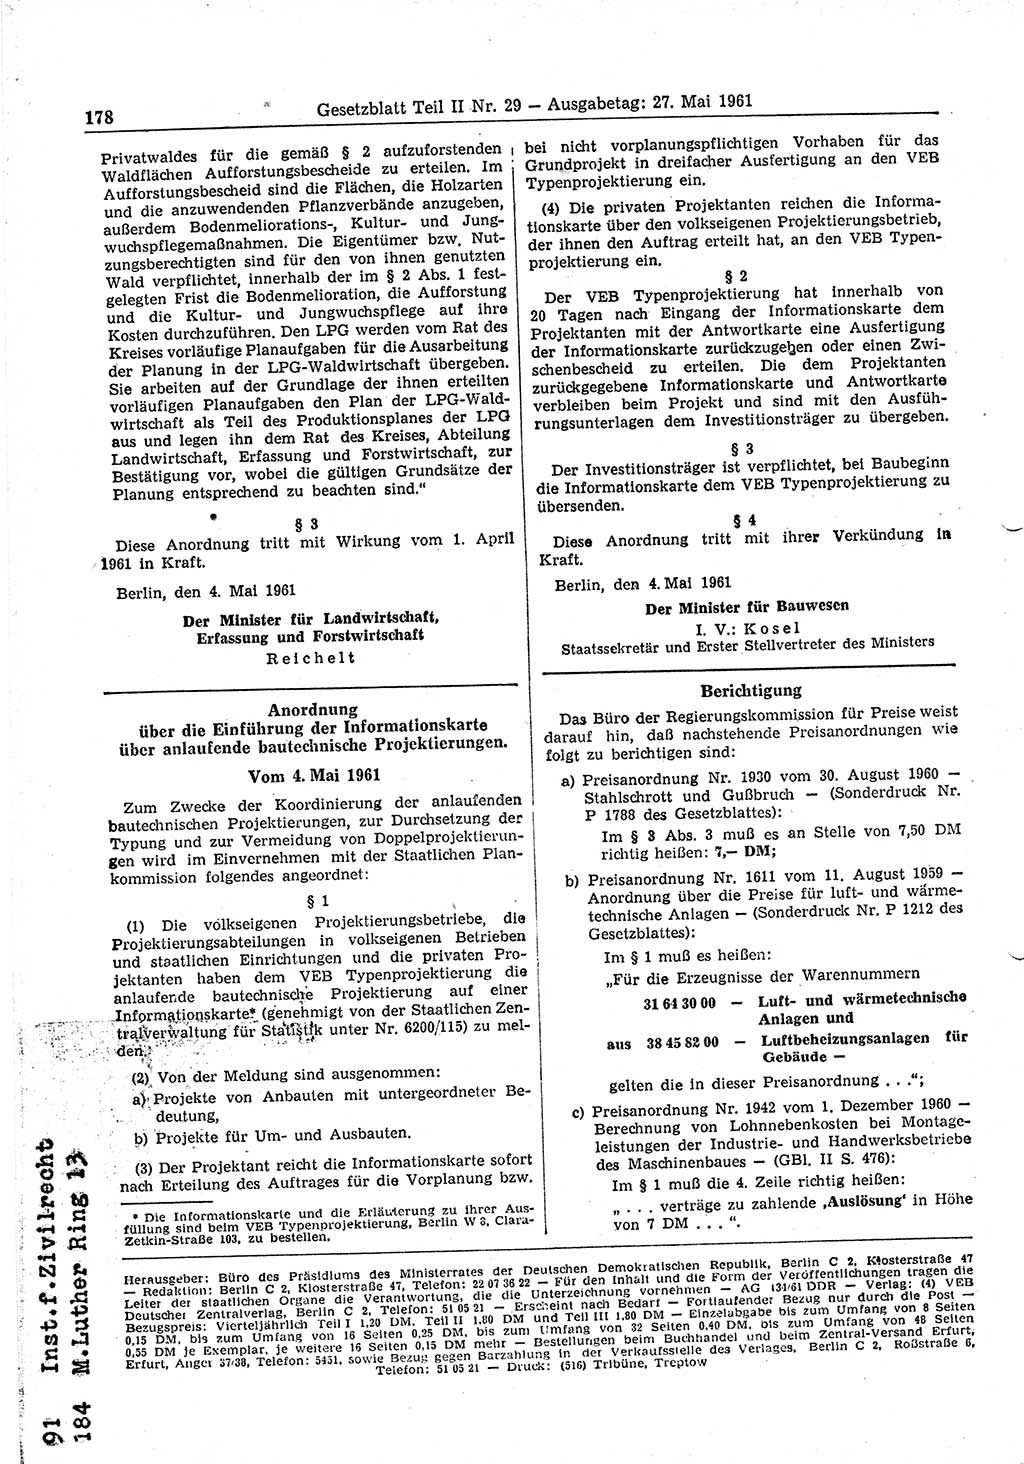 Gesetzblatt (GBl.) der Deutschen Demokratischen Republik (DDR) Teil ⅠⅠ 1961, Seite 178 (GBl. DDR ⅠⅠ 1961, S. 178)